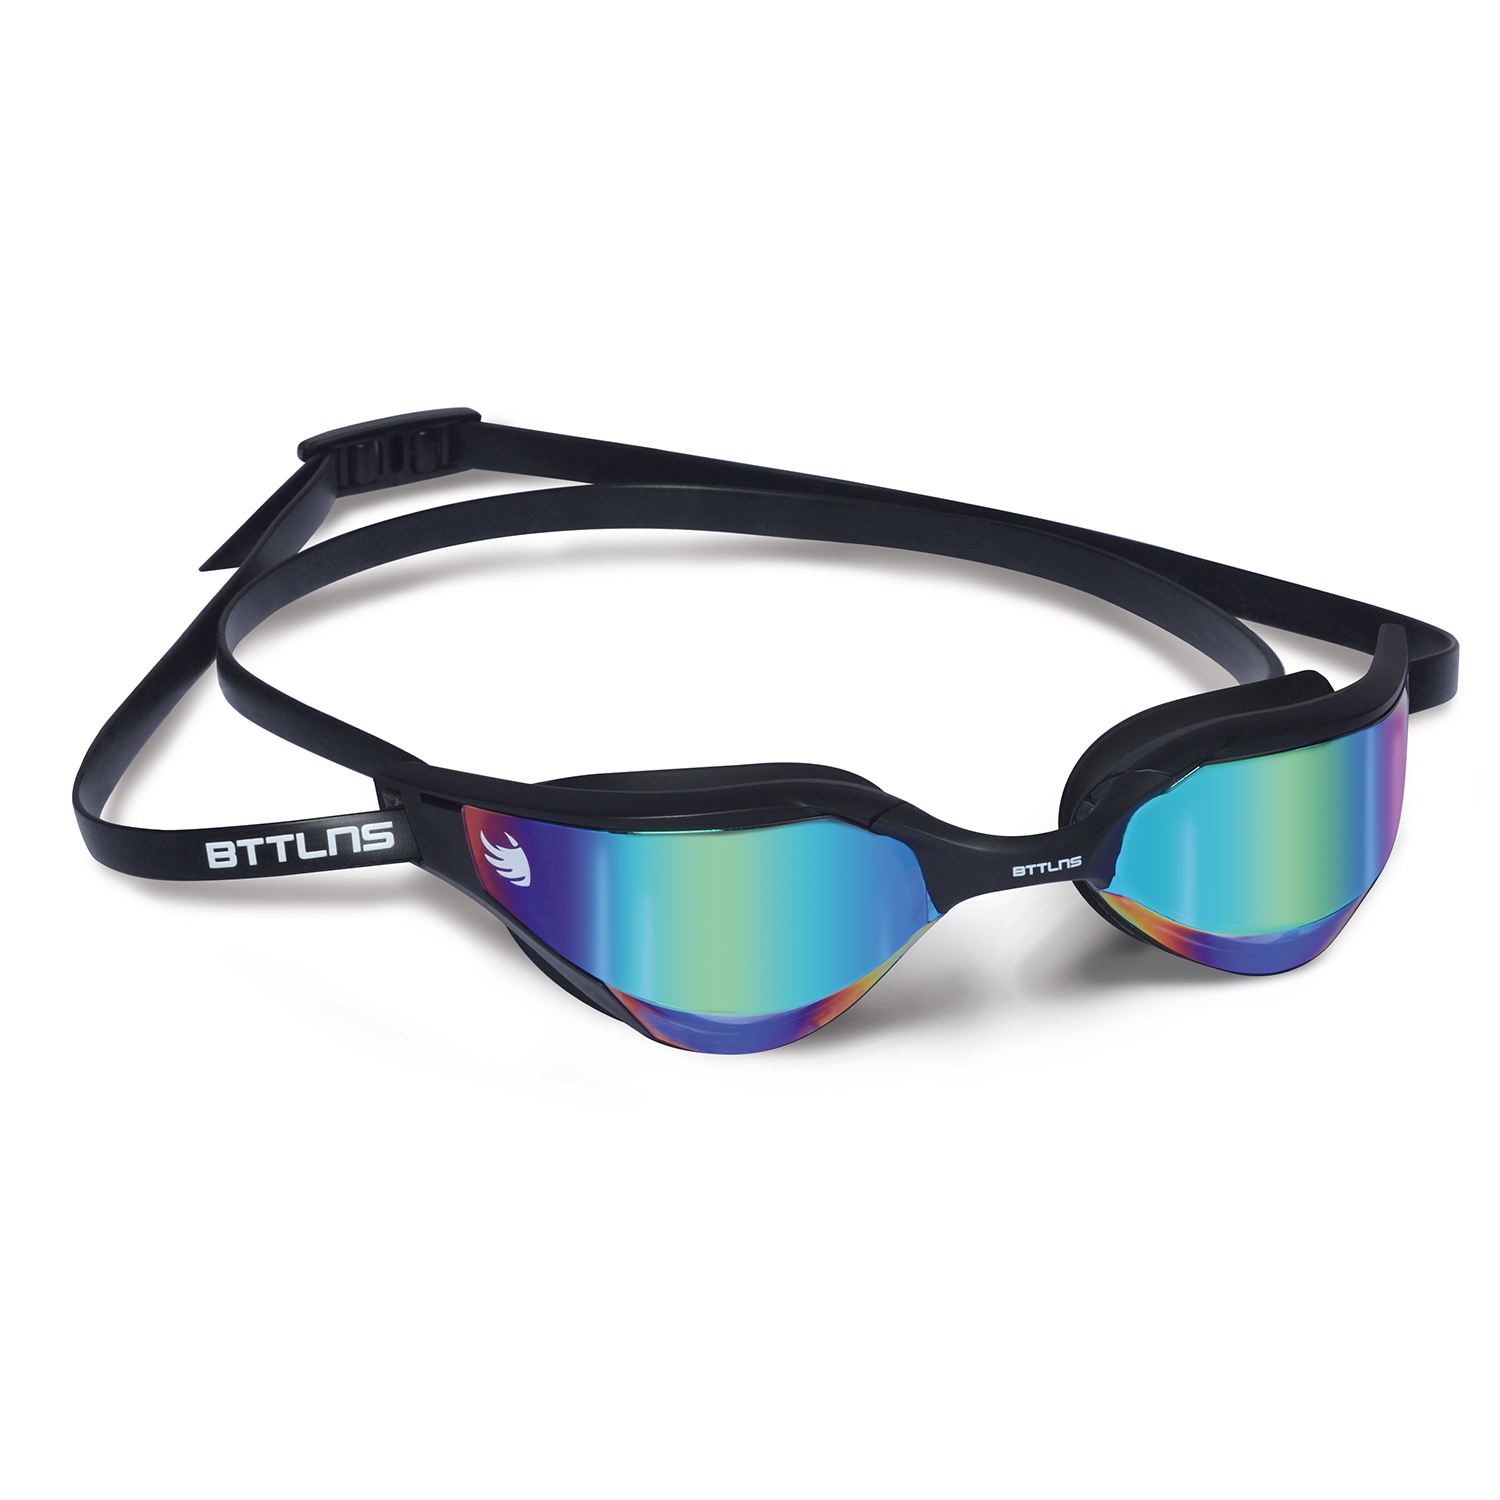 BTTLNS Sunfyre 1.0 mirror lenses goggle black/rainbow  0121018-061